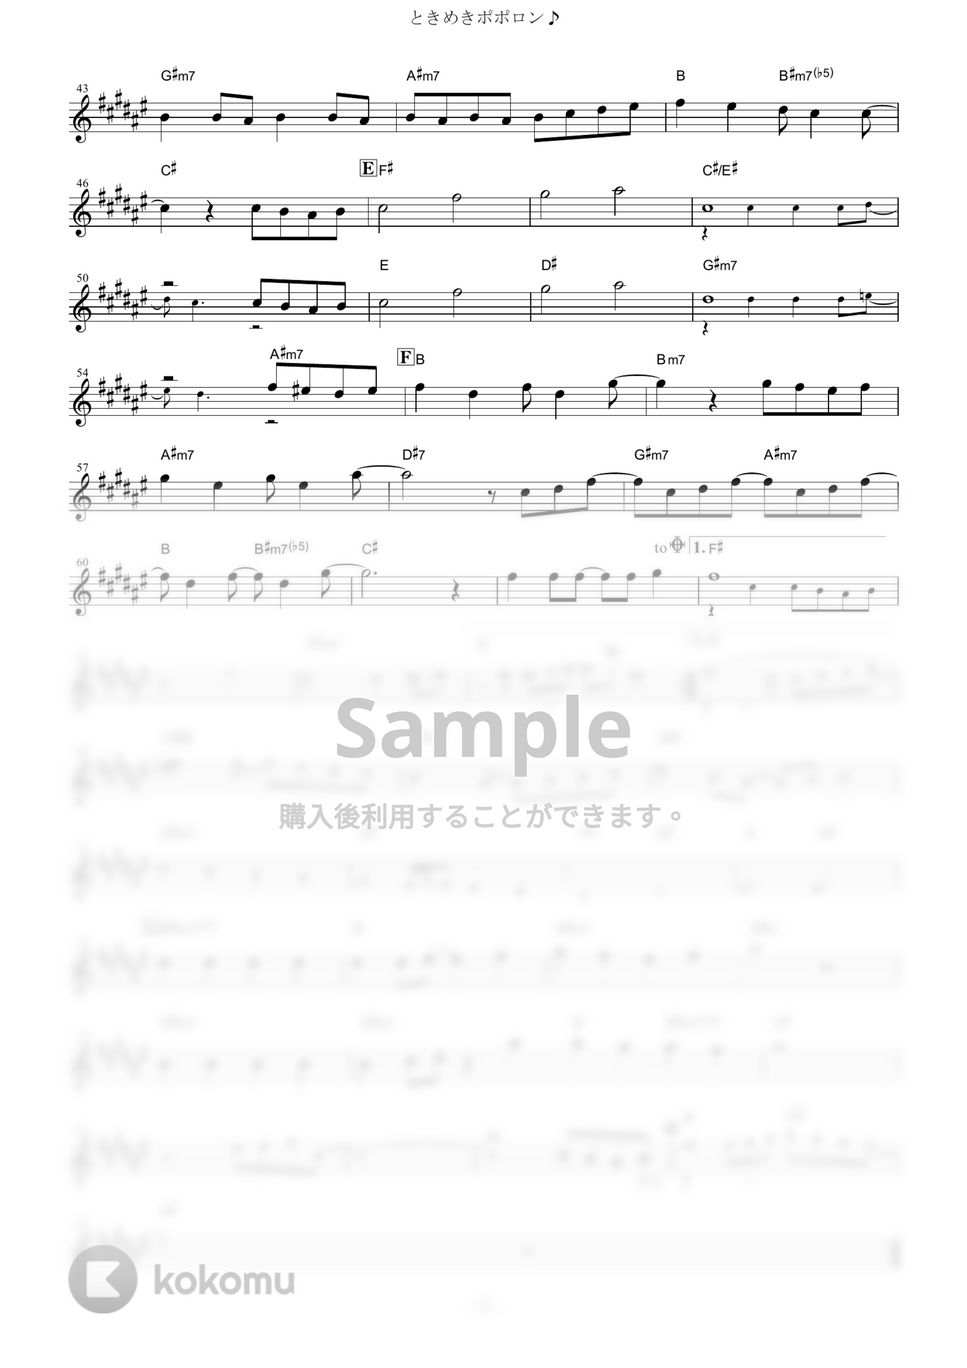 チマメ隊 - ときめきポポロン♪ (『ご注文はうさぎですか??』 / in Eb) by muta-sax